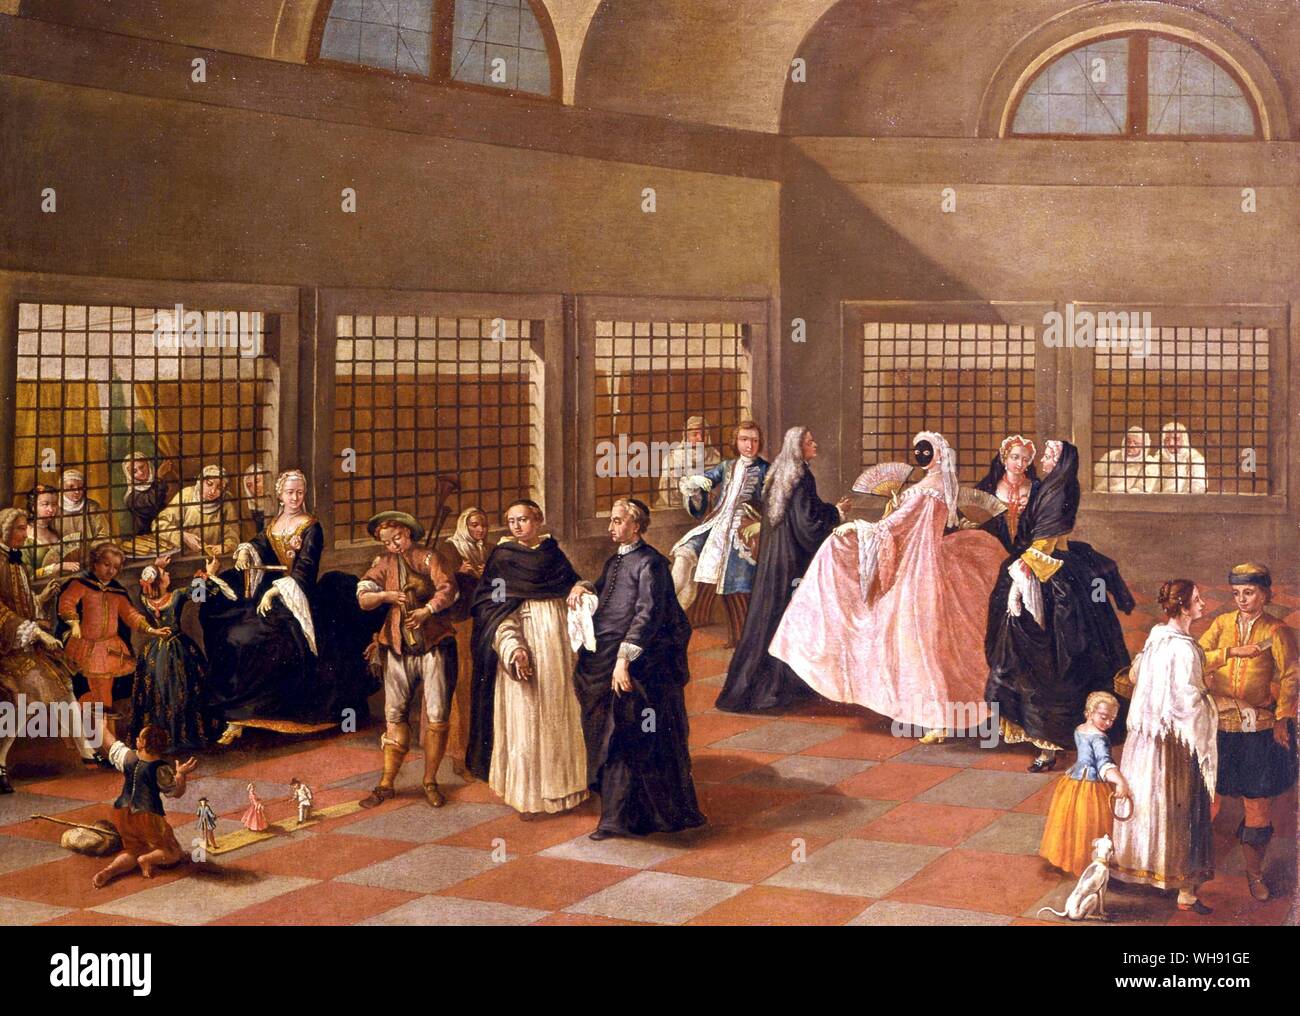 Il Parlatorio. Der Besuch im Salon im Kloster. Von Longhi, Pietro (1701-88). in Ca' Rezzonico, Museo del Settecento, Venedig. Stockfoto